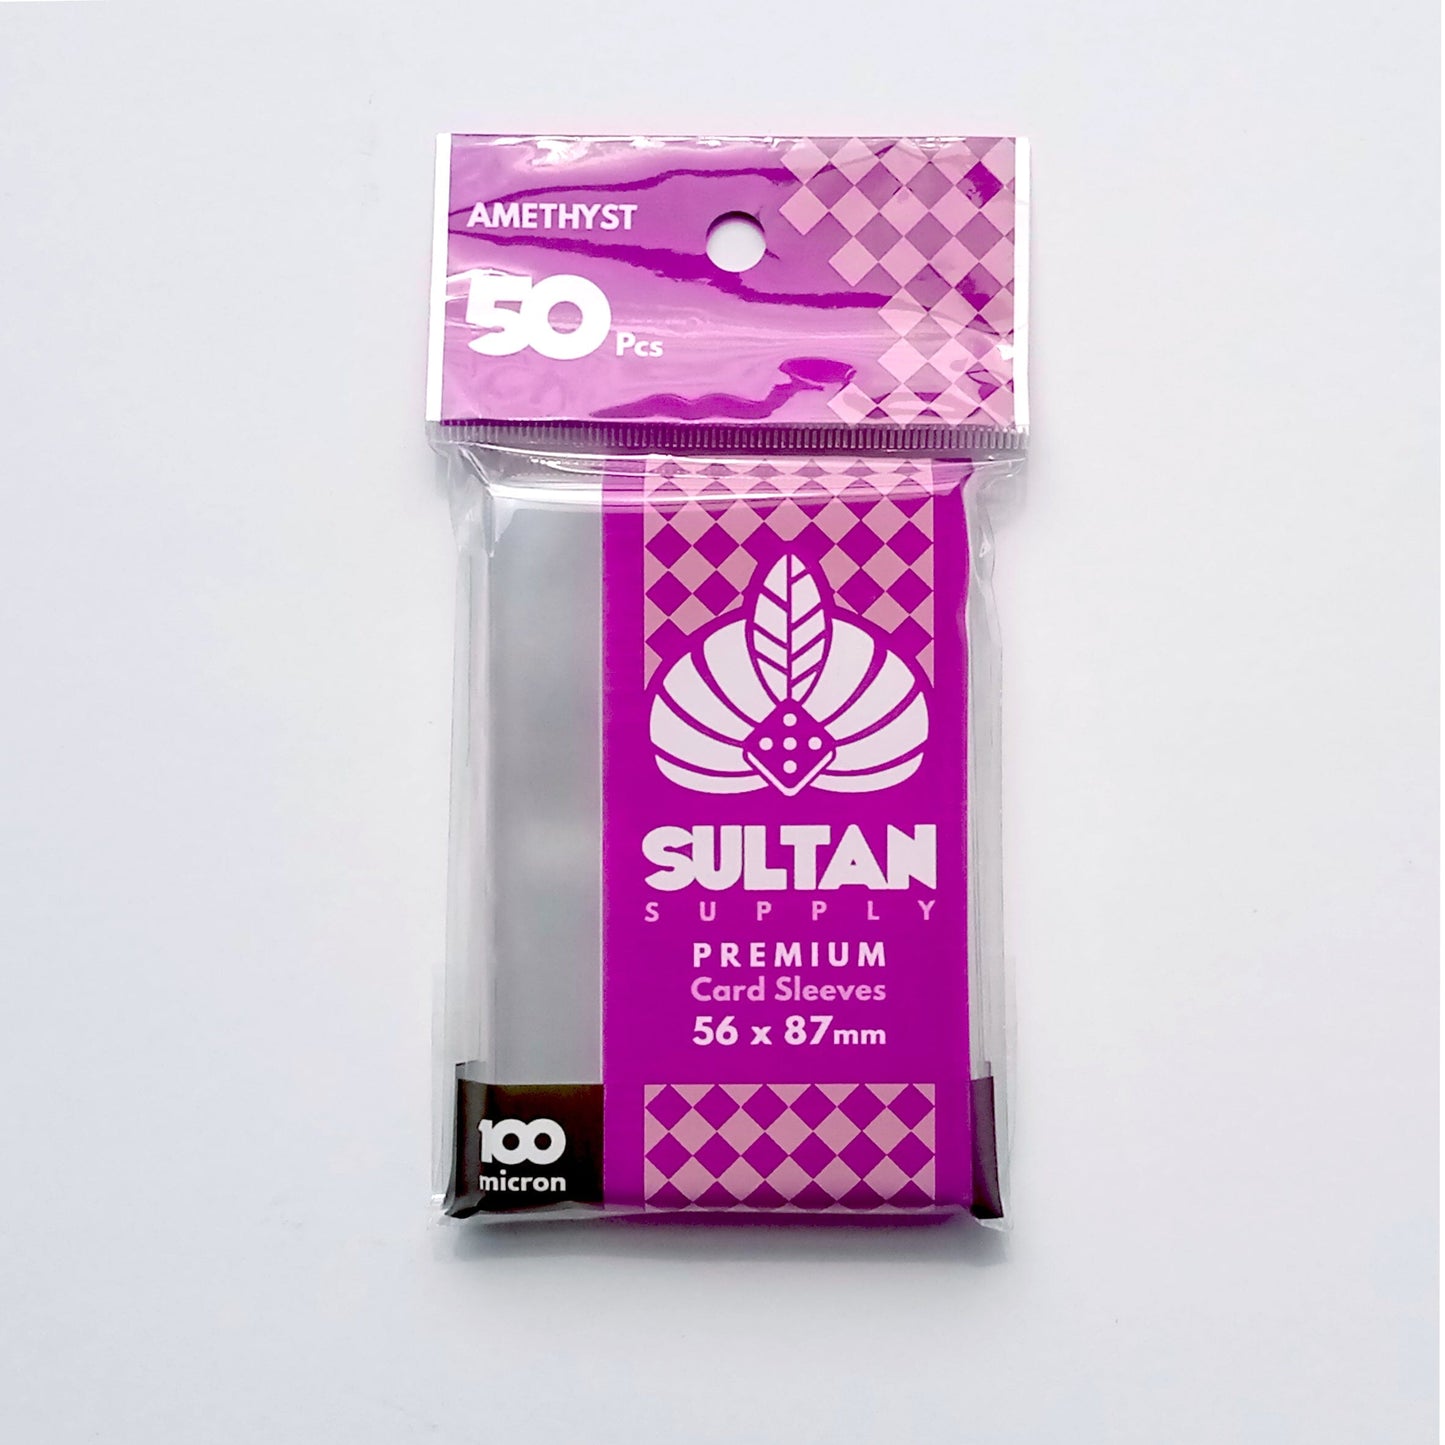 Amethyst Standard US Board Game Sleeves 56x87 (50 pcs) Card Sleeves Sultan Supply 